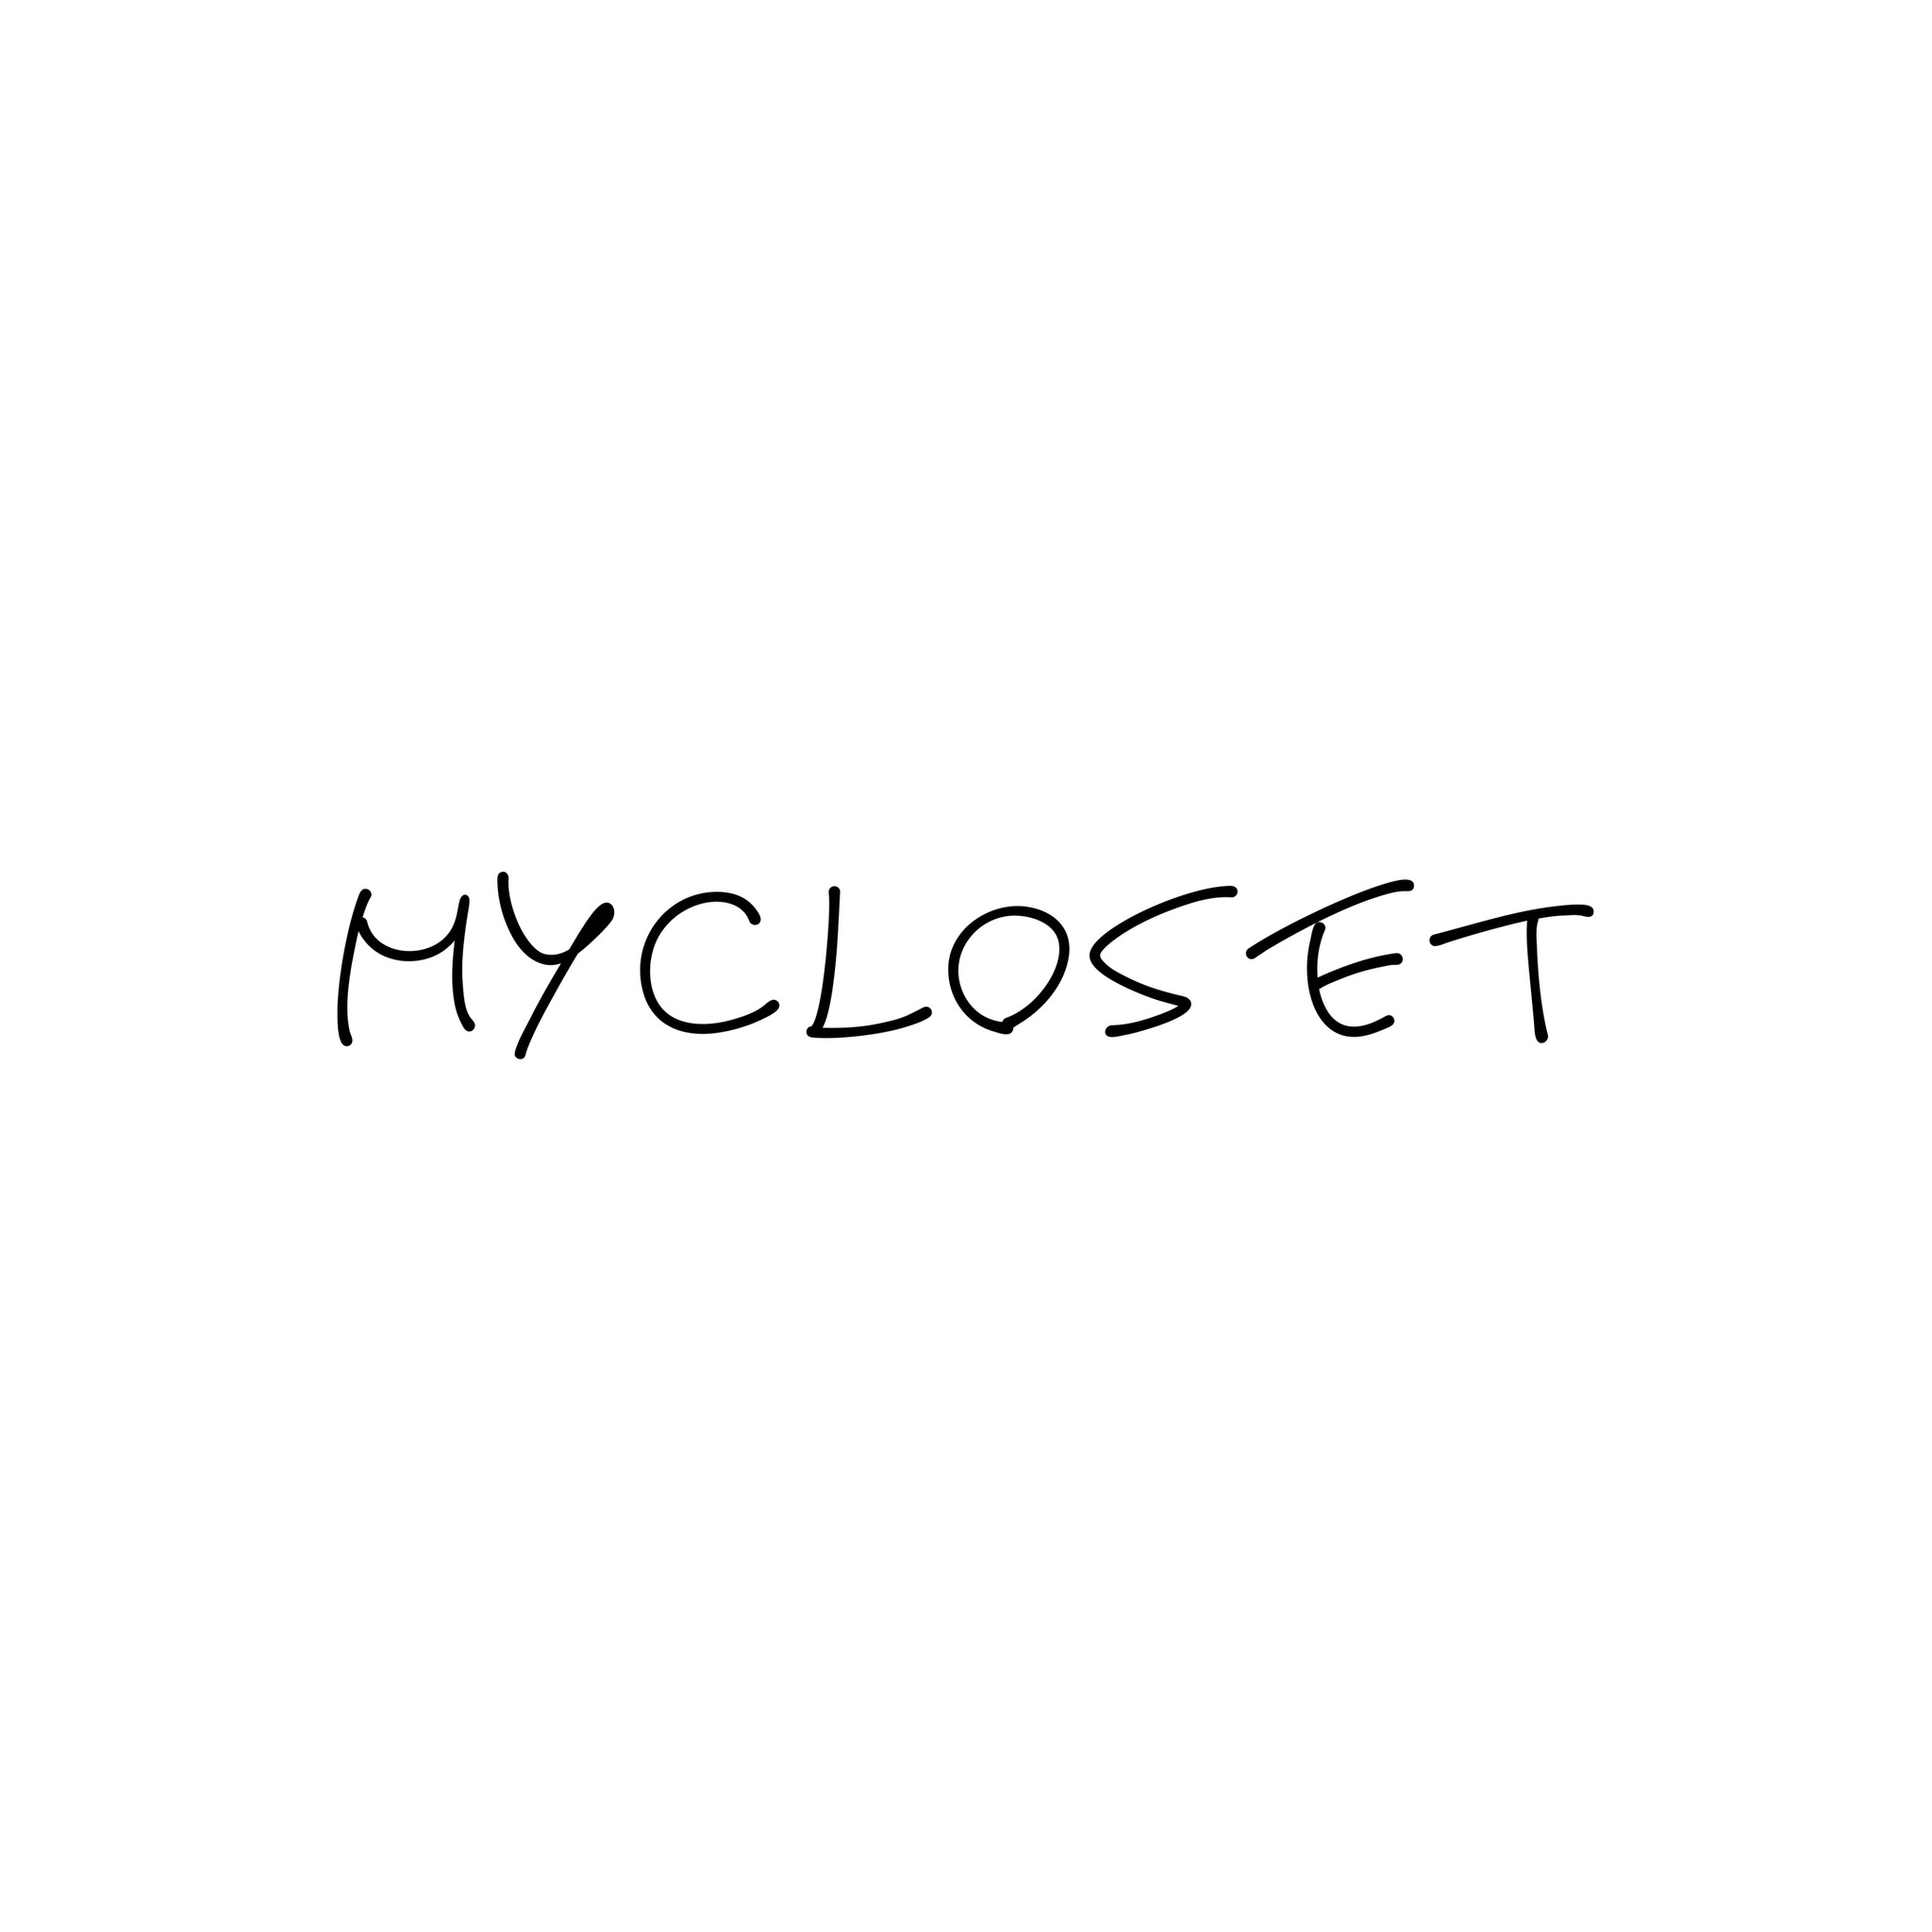 Mycloset1221